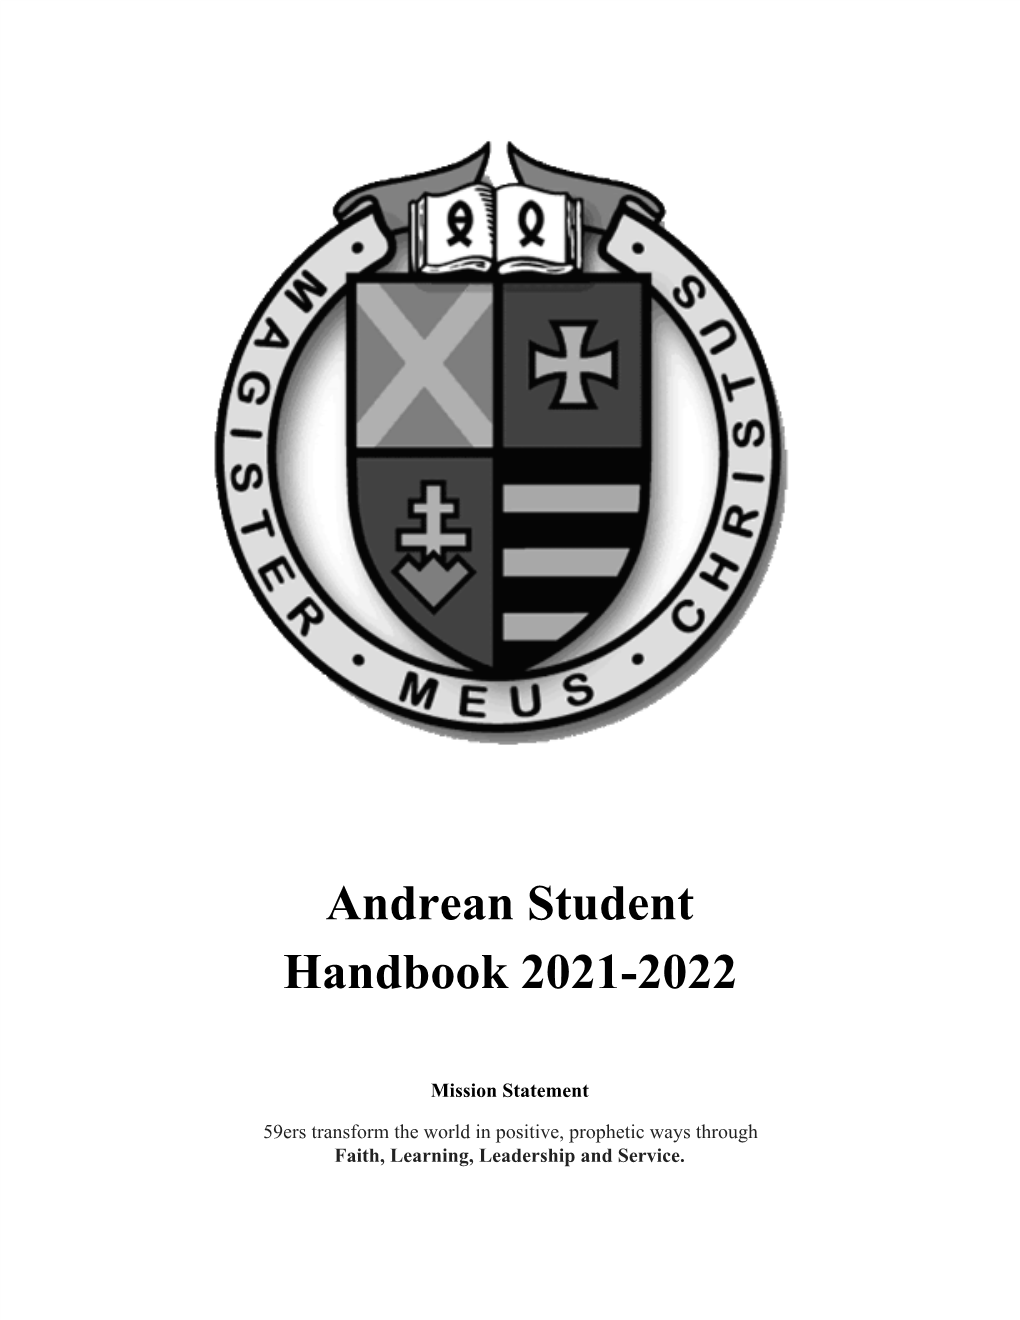 Andrean Student Handbook 2021-2022